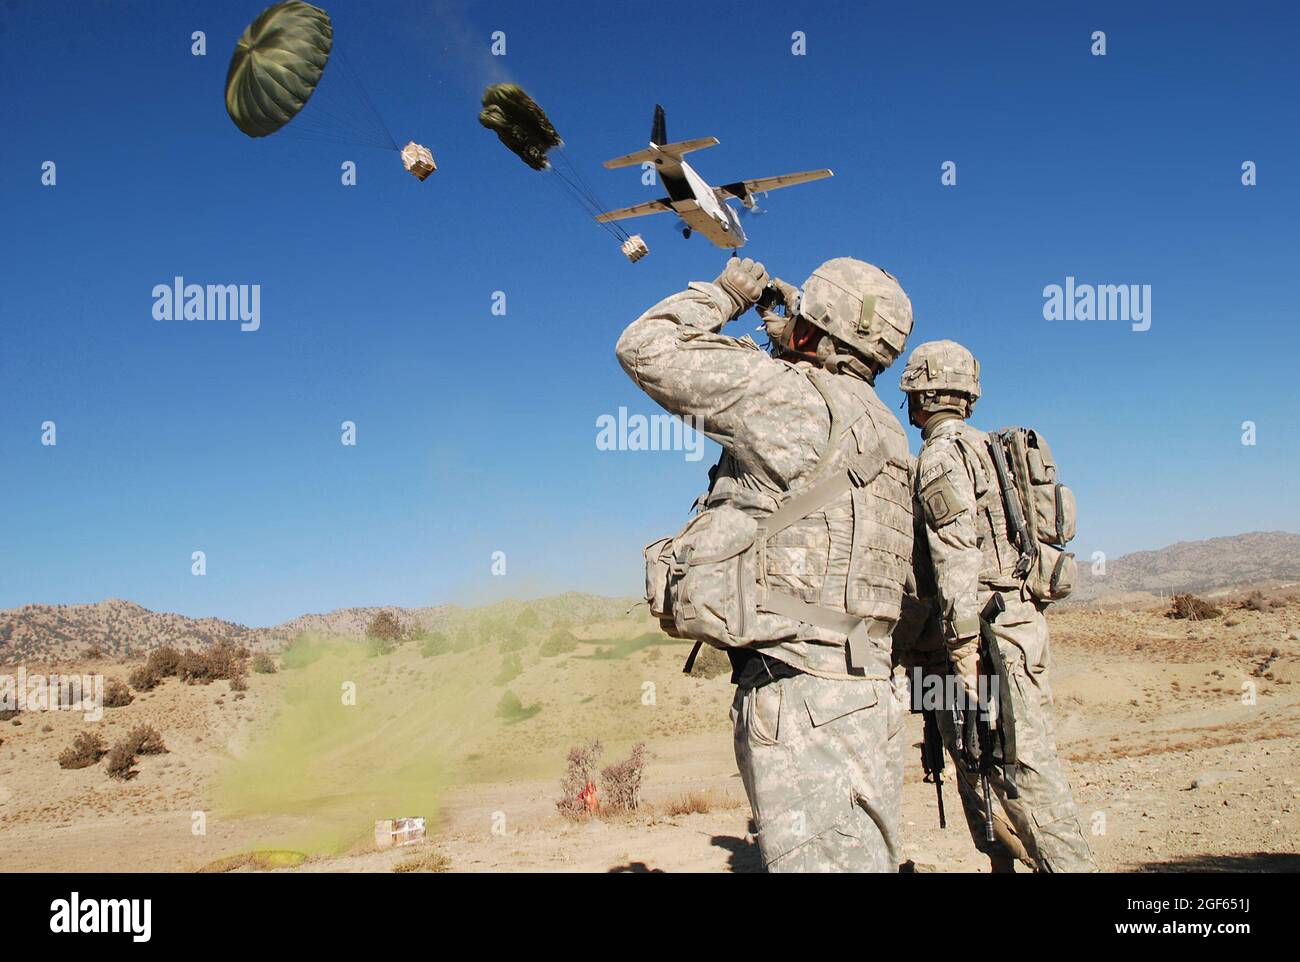 Ein Fallschirmjäger vom 1. Bataillon (Airborne), 503. Infanterie-Regiment, 173. Luftbrigade, beobachtet, wie ein Flugzeug über dem Himmel fliegt, während er in der Provinz Paktika, Afghanistan, am 9. November Vorräte abgibt. Stockfoto